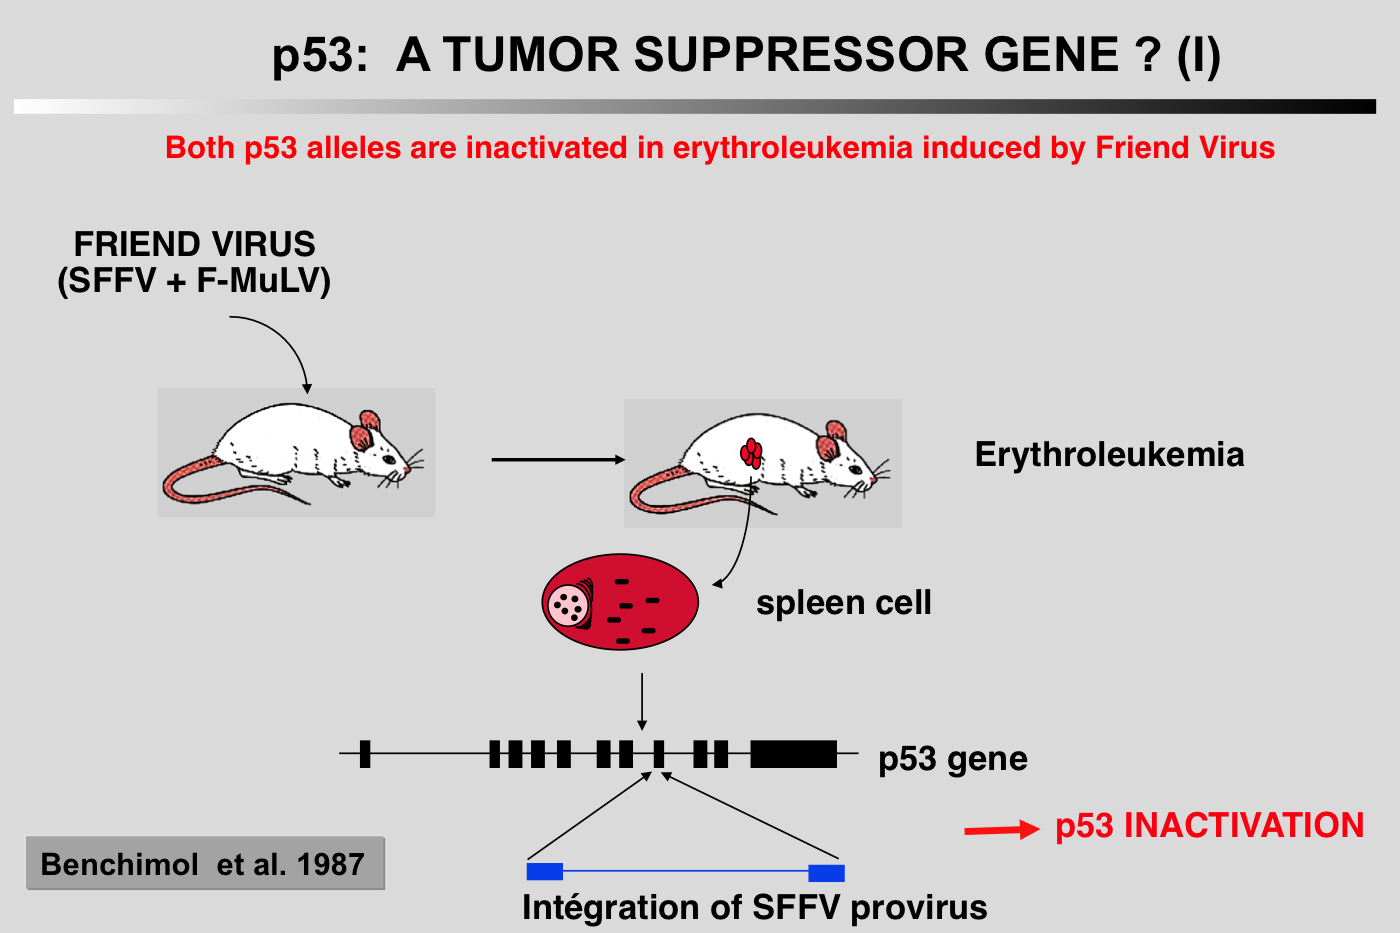 p53 as a Tumor Suppressor?